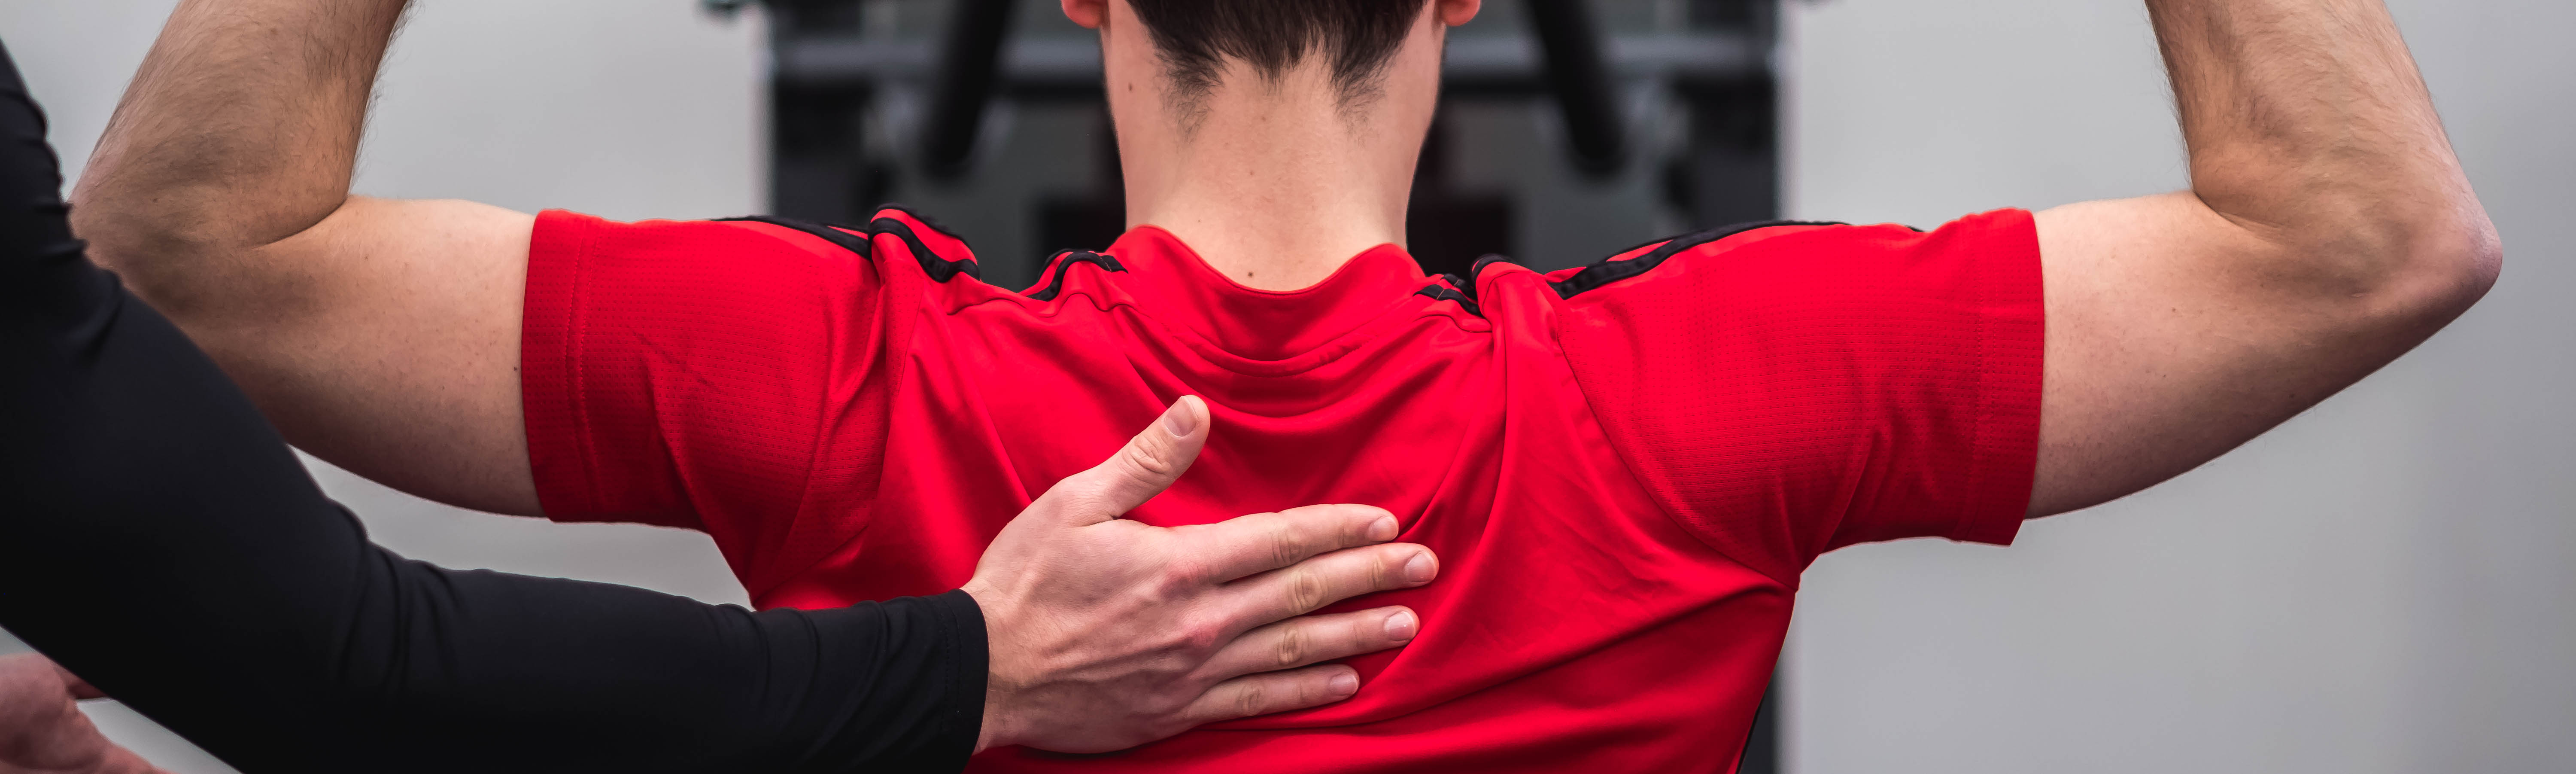 Sportler beim Training der Rückenmuskulatur am Gerät